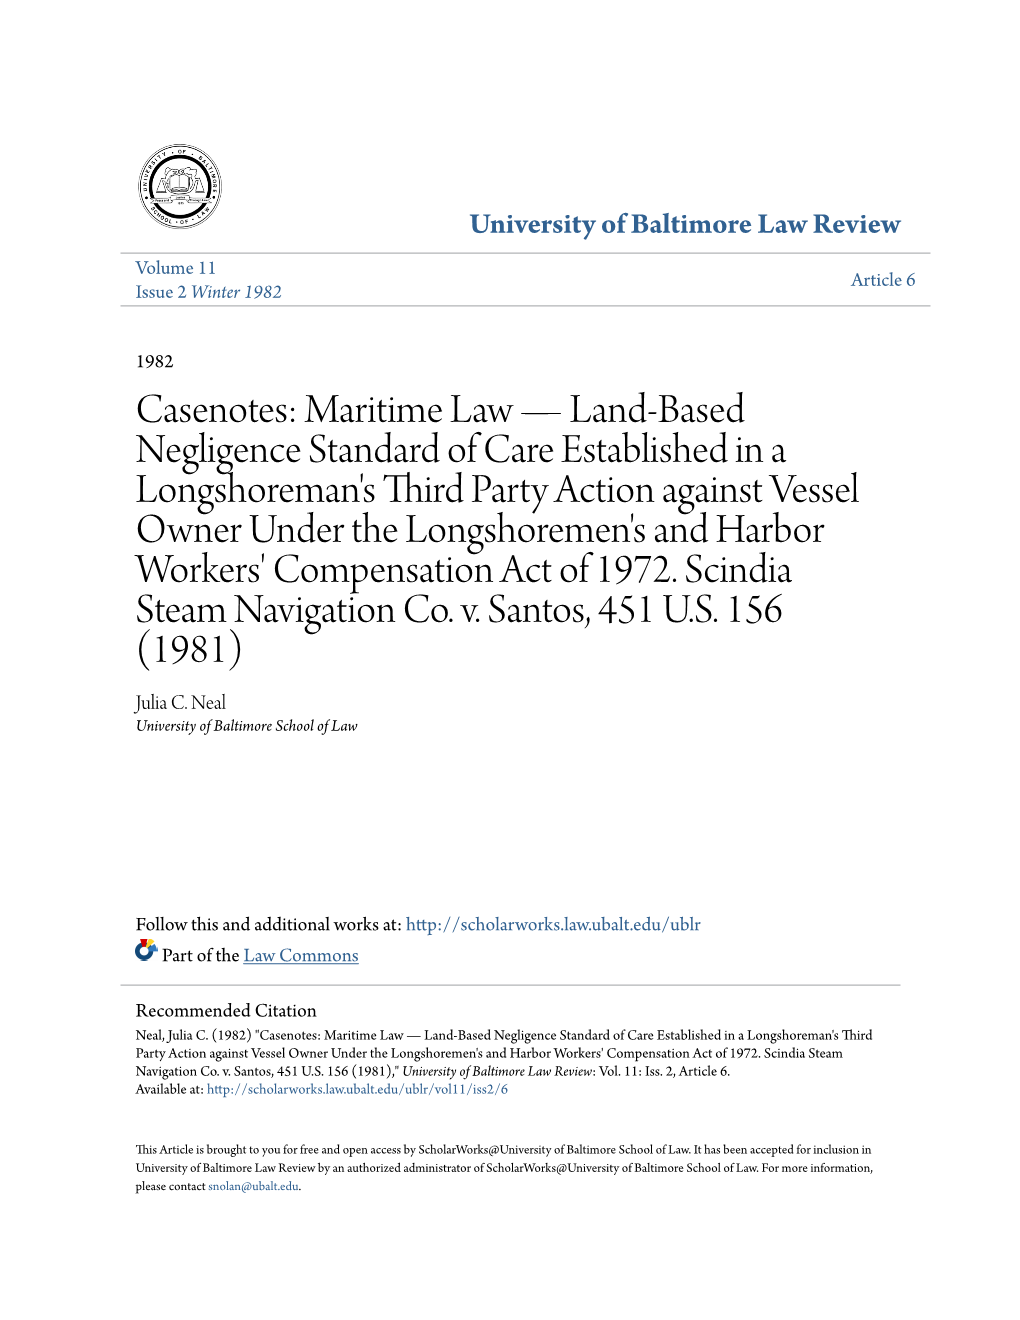 Casenotes: Maritime Law—Land-Based Negligence